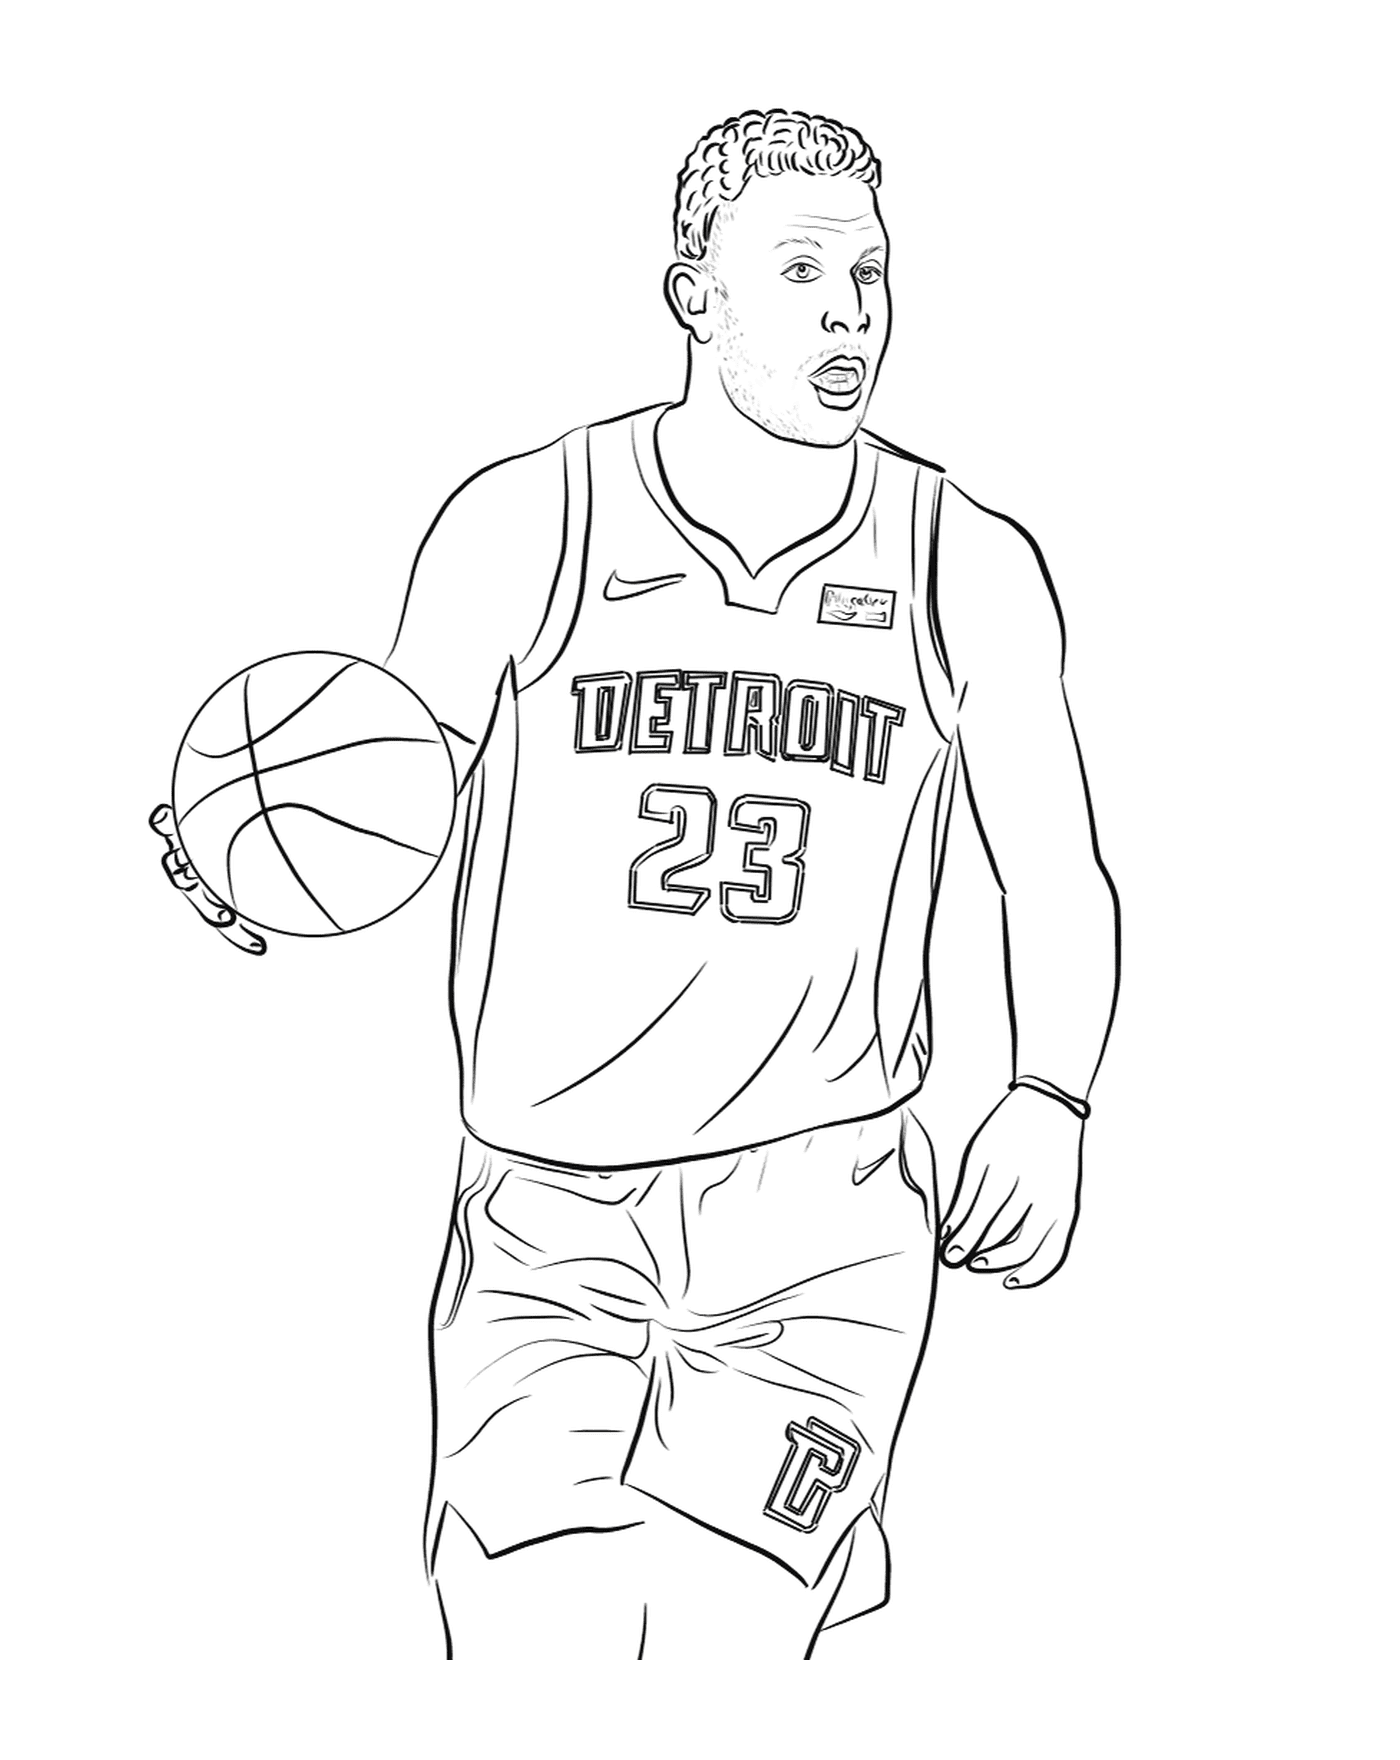   Blake Griffin tient un ballon de basketball 